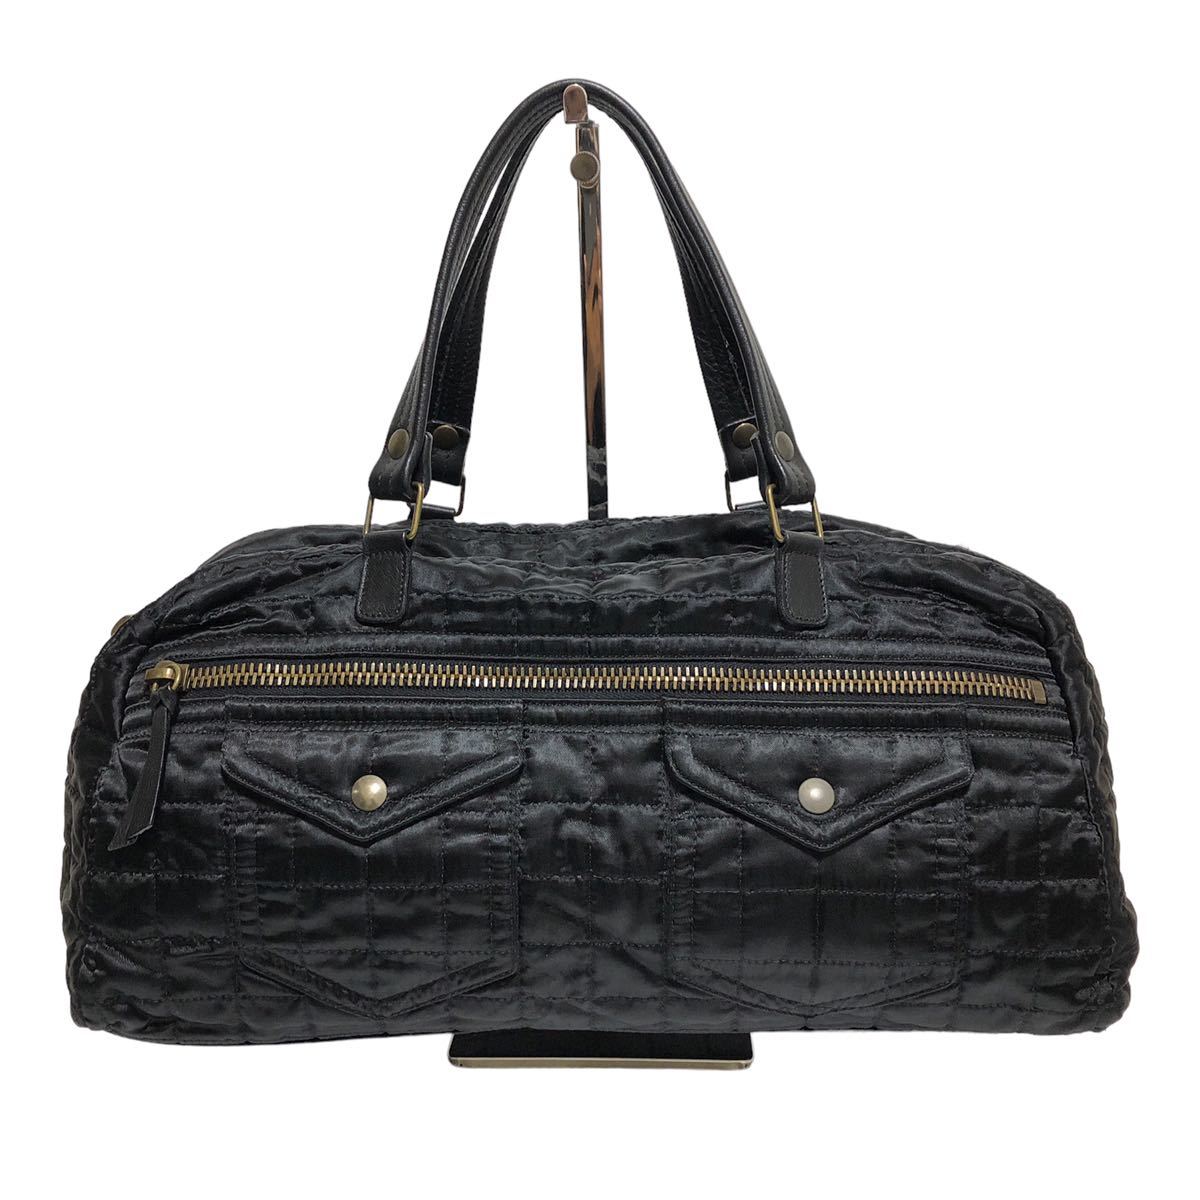 MIU MIU MiuMiu Boston bag handbag nylon quilting black 